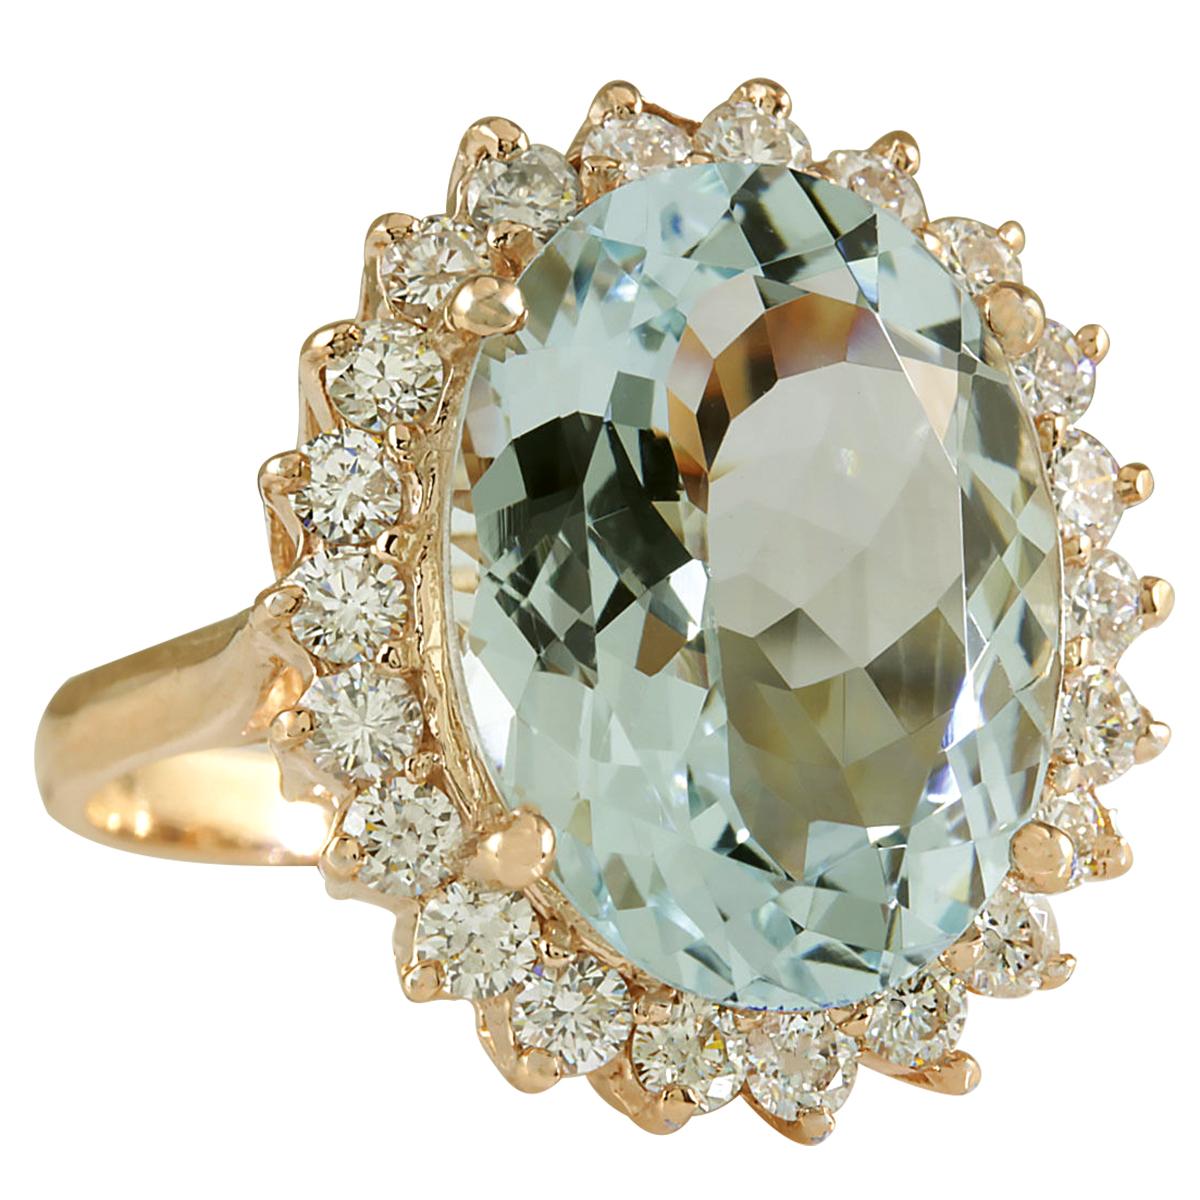 8.40 Carat Natural Aquamarine 14 Karat Rose Gold Diamond Ring
Stamped: 14K Rose Gold
Total Ring Weight: 6.4 Grams
Total Natural Aquamarine Weight is 7.64 Carat (Measures: 16.00x12.00 mm)
Color: Blue
Total Natural Diamond Weight is 0.76 Carat
Color: